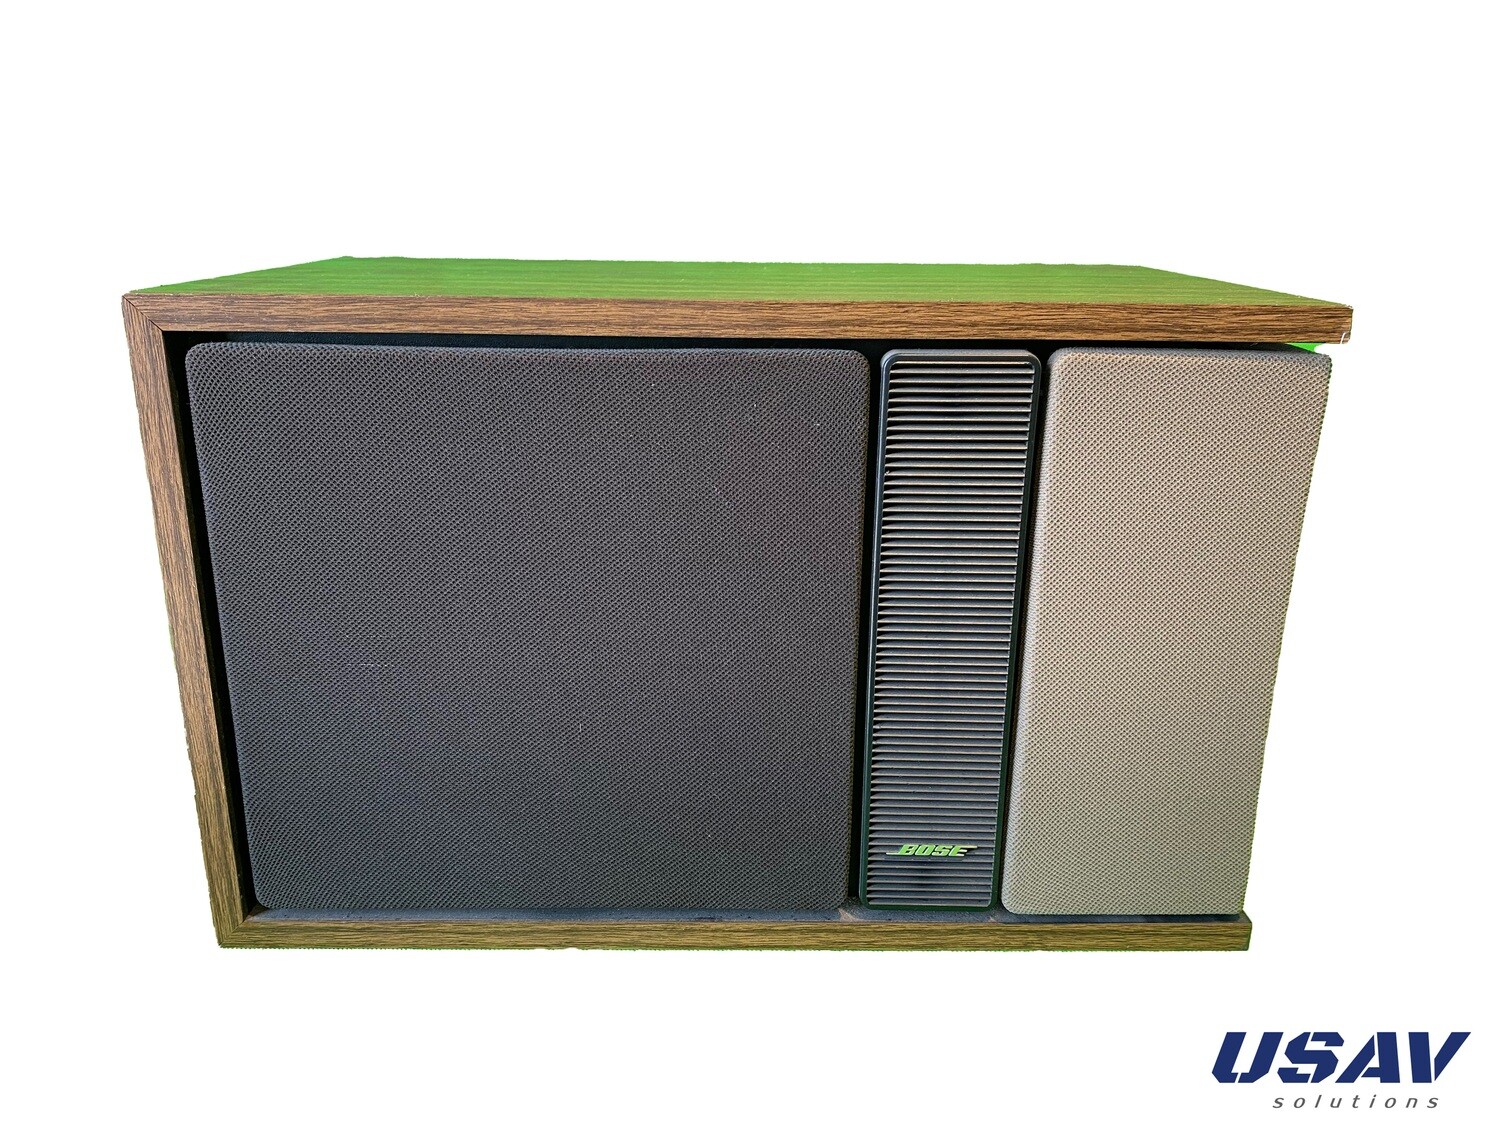 Bose 301 Series II loudspeaker (Single Right Speaker)